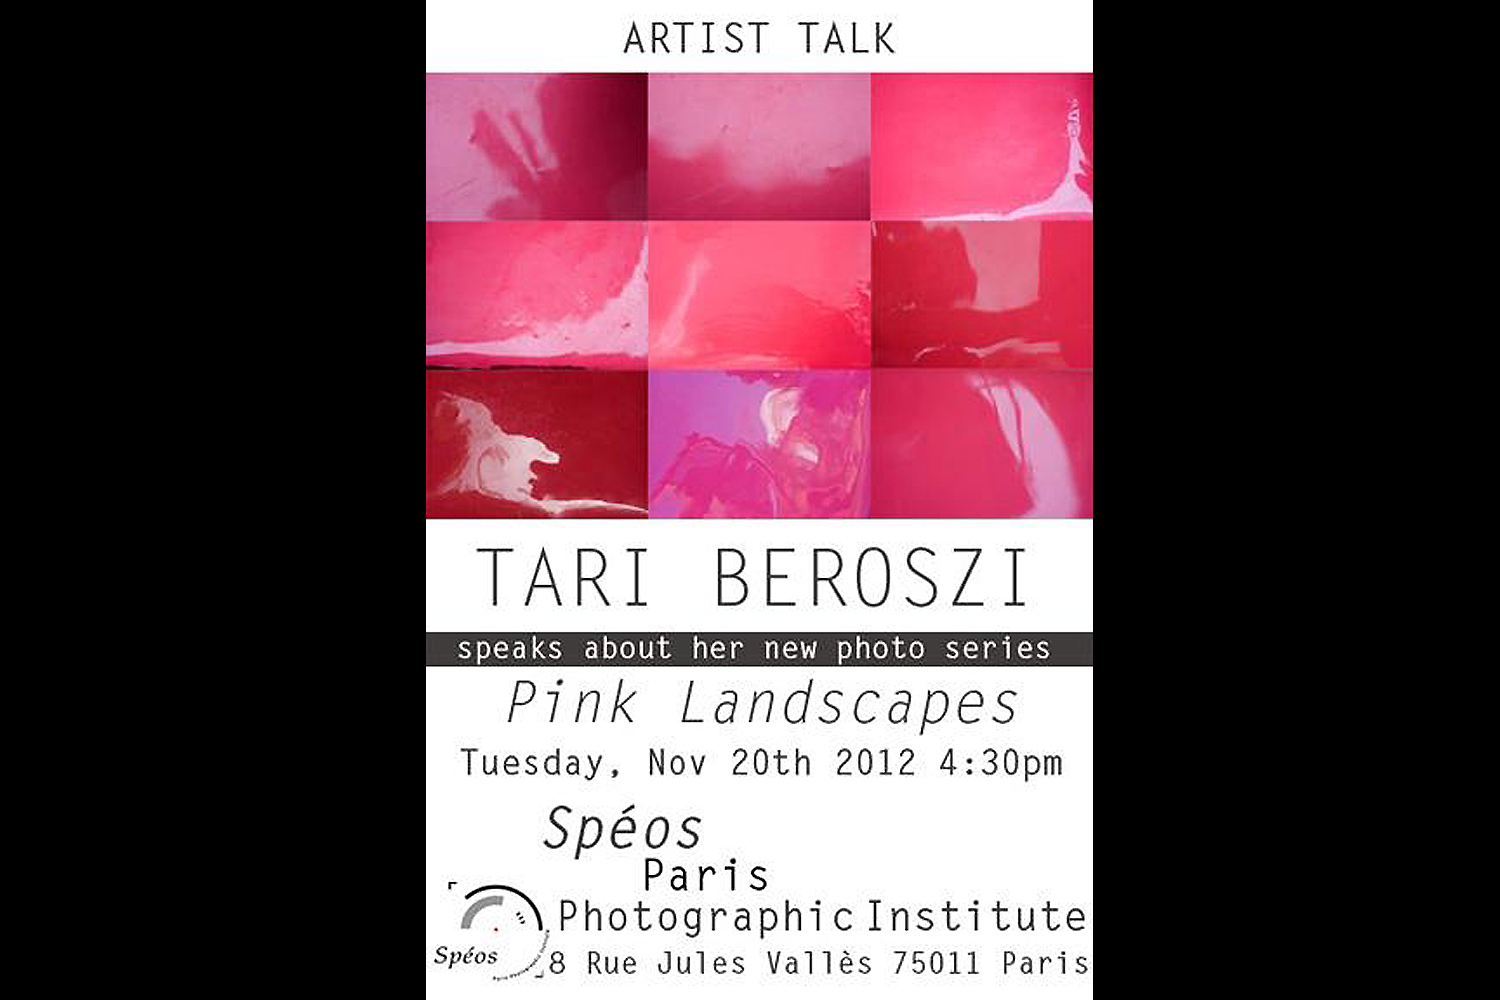           Artist Talk. Spéos École de Photographie, Paris, France, 2012 